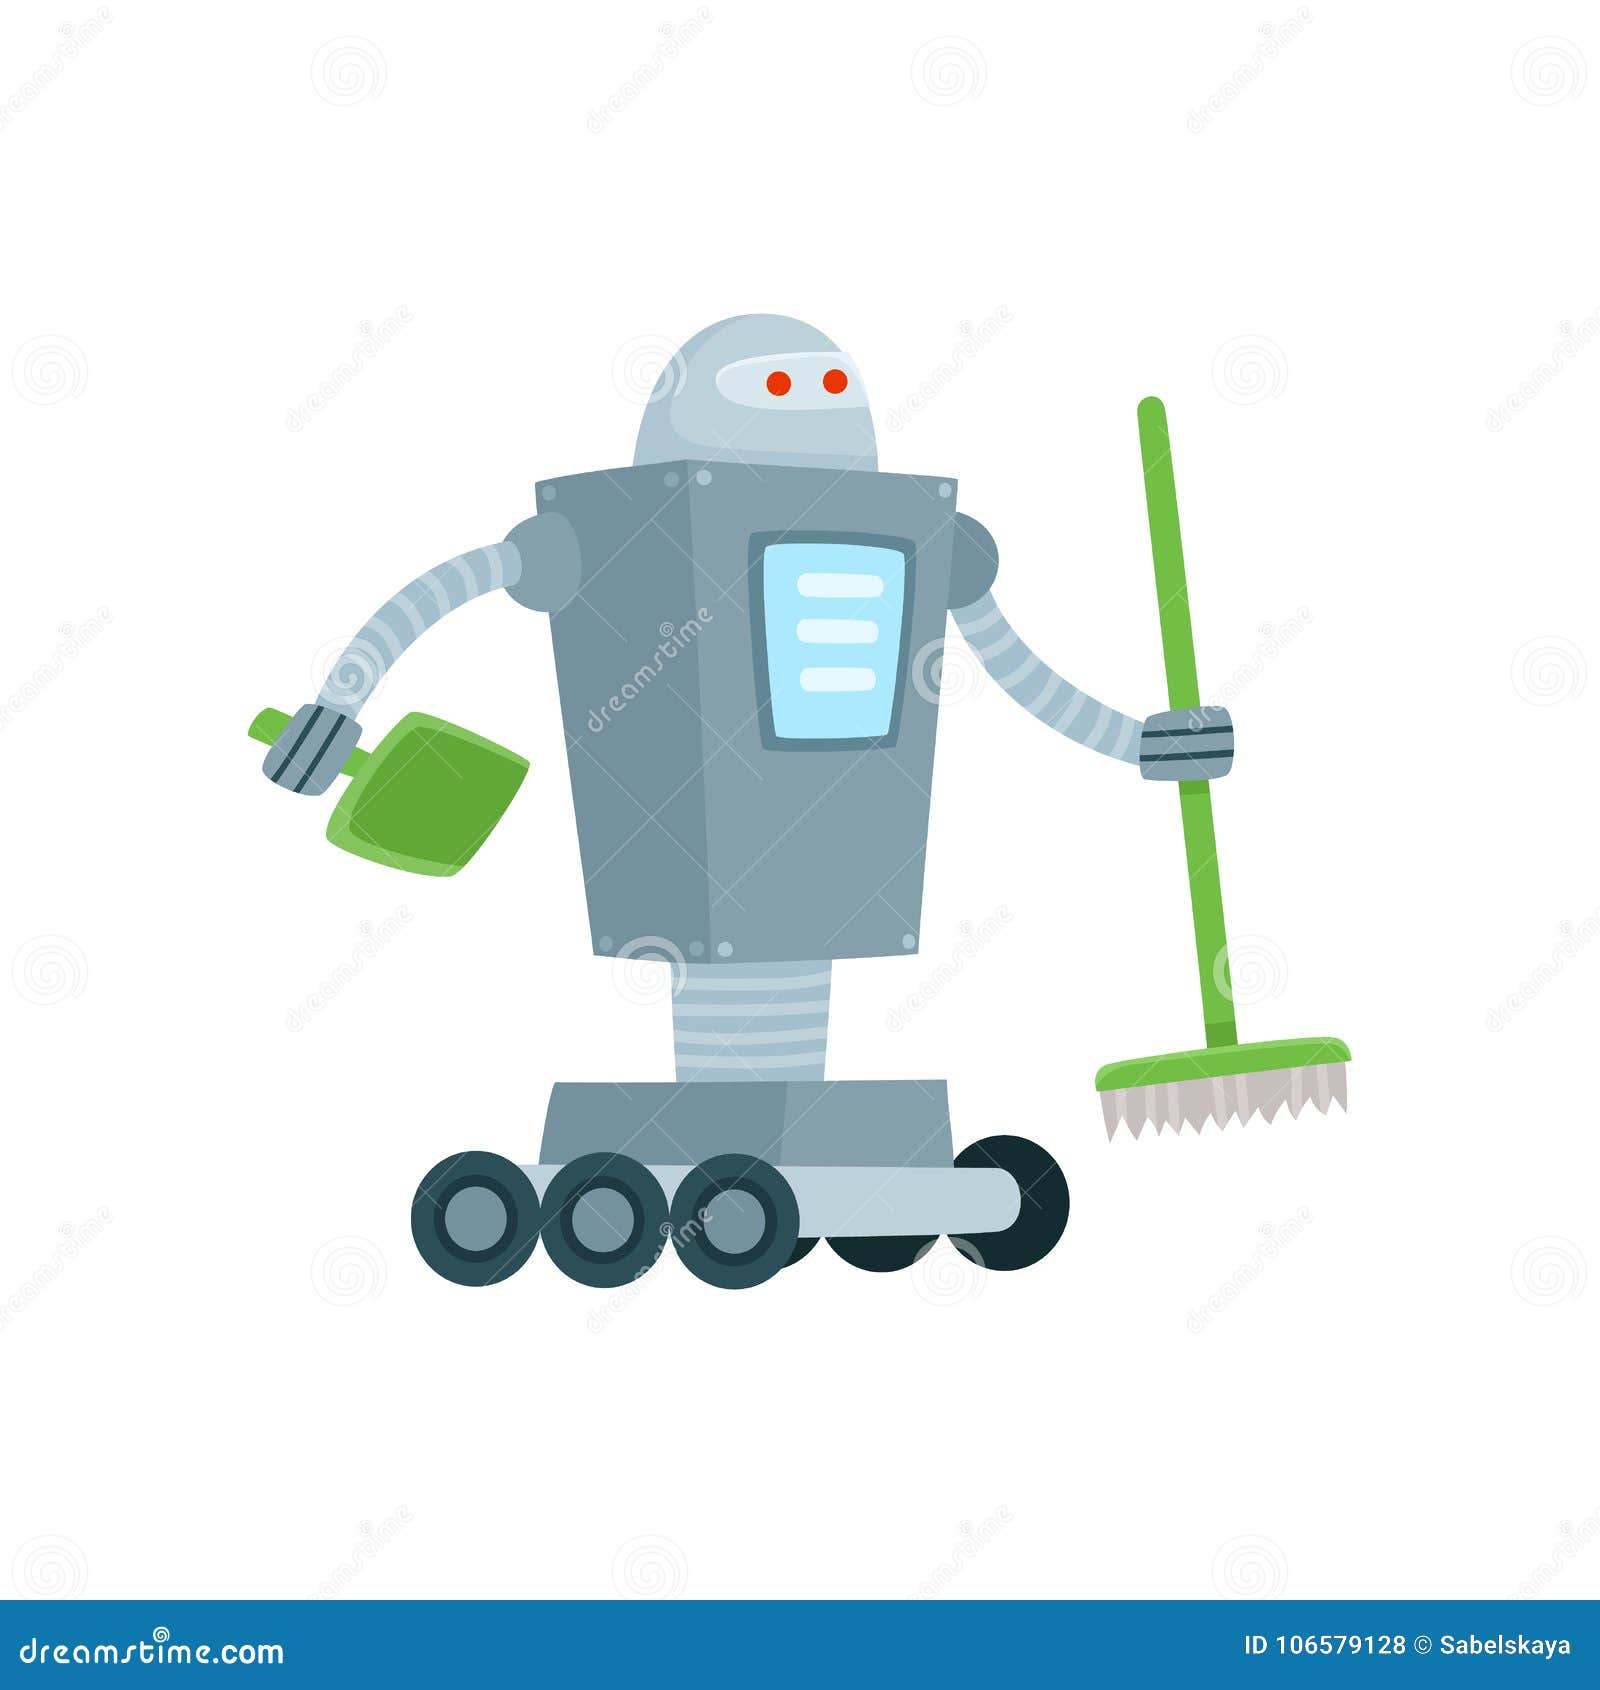 Запусти уборку роботом. Роботы для уборки. Робот уборщик. Робот помощник для детей. Робот помощник по дому.